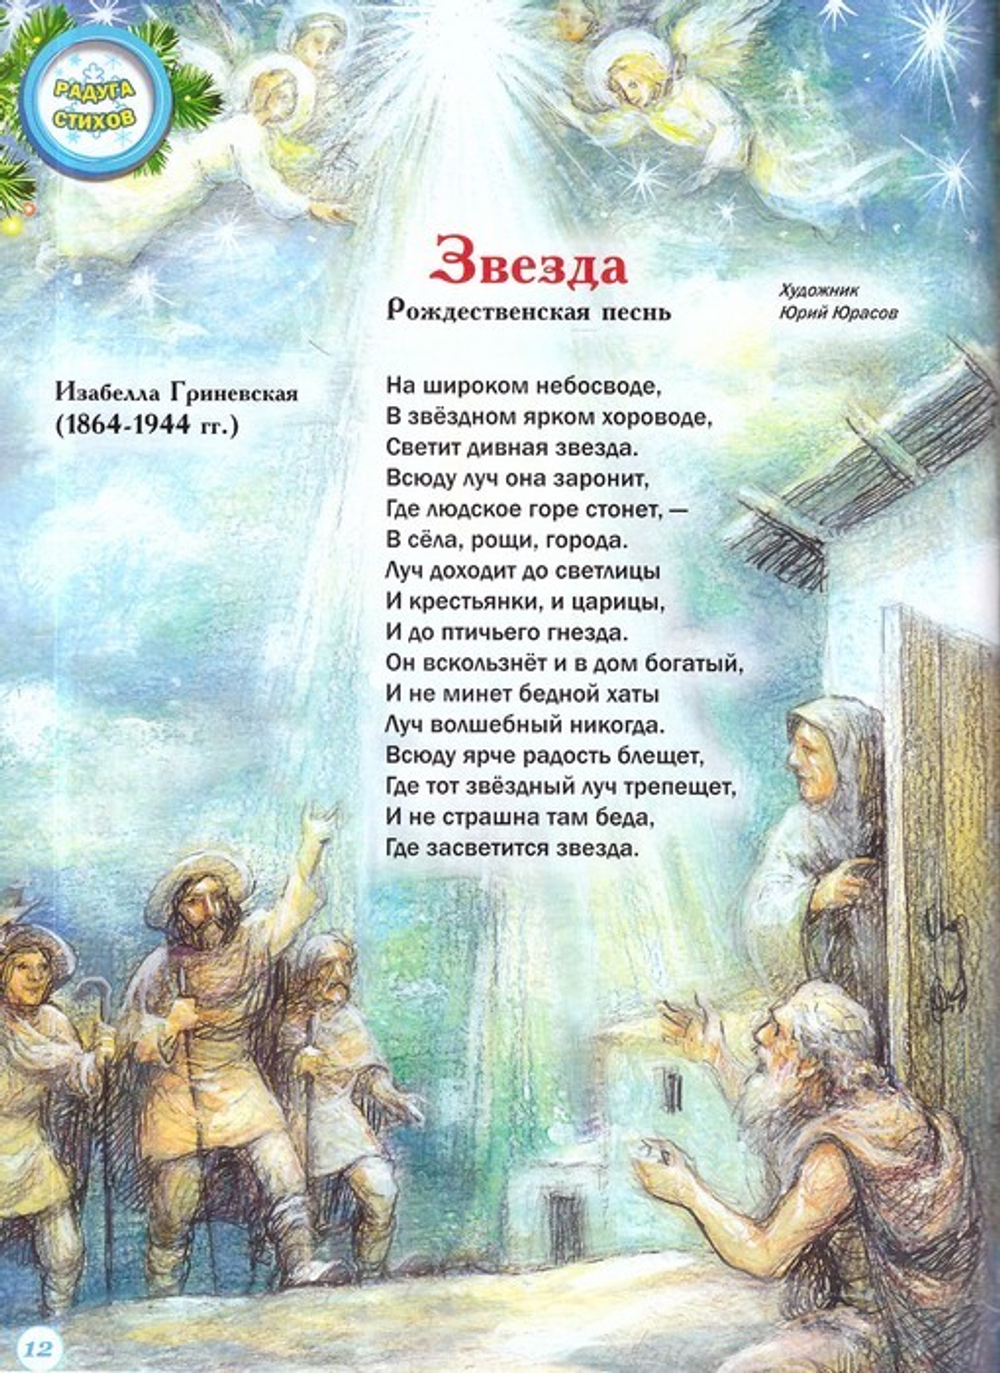 Журнал "Шишкин лес" № 1 Январь 2021 г.